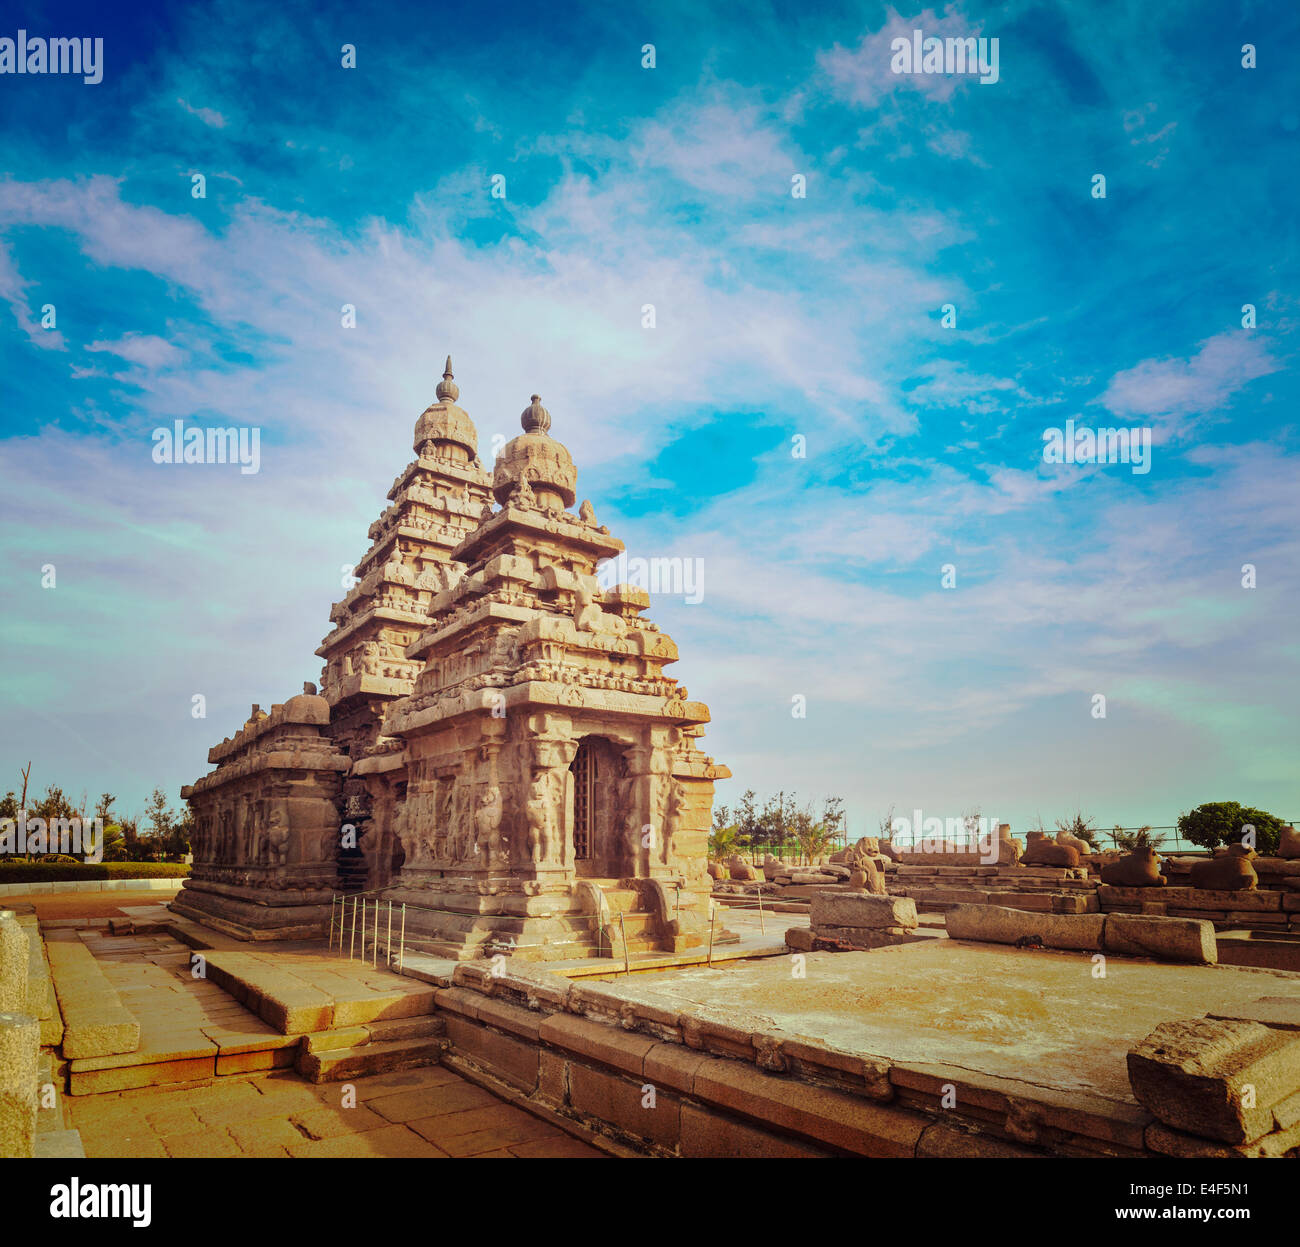 Vintage retrò hipster stile immagine di viaggio del famoso Tamil Nadu landmark - Tempio Shore, sito del patrimonio mondiale in Mahabalipuram Foto Stock